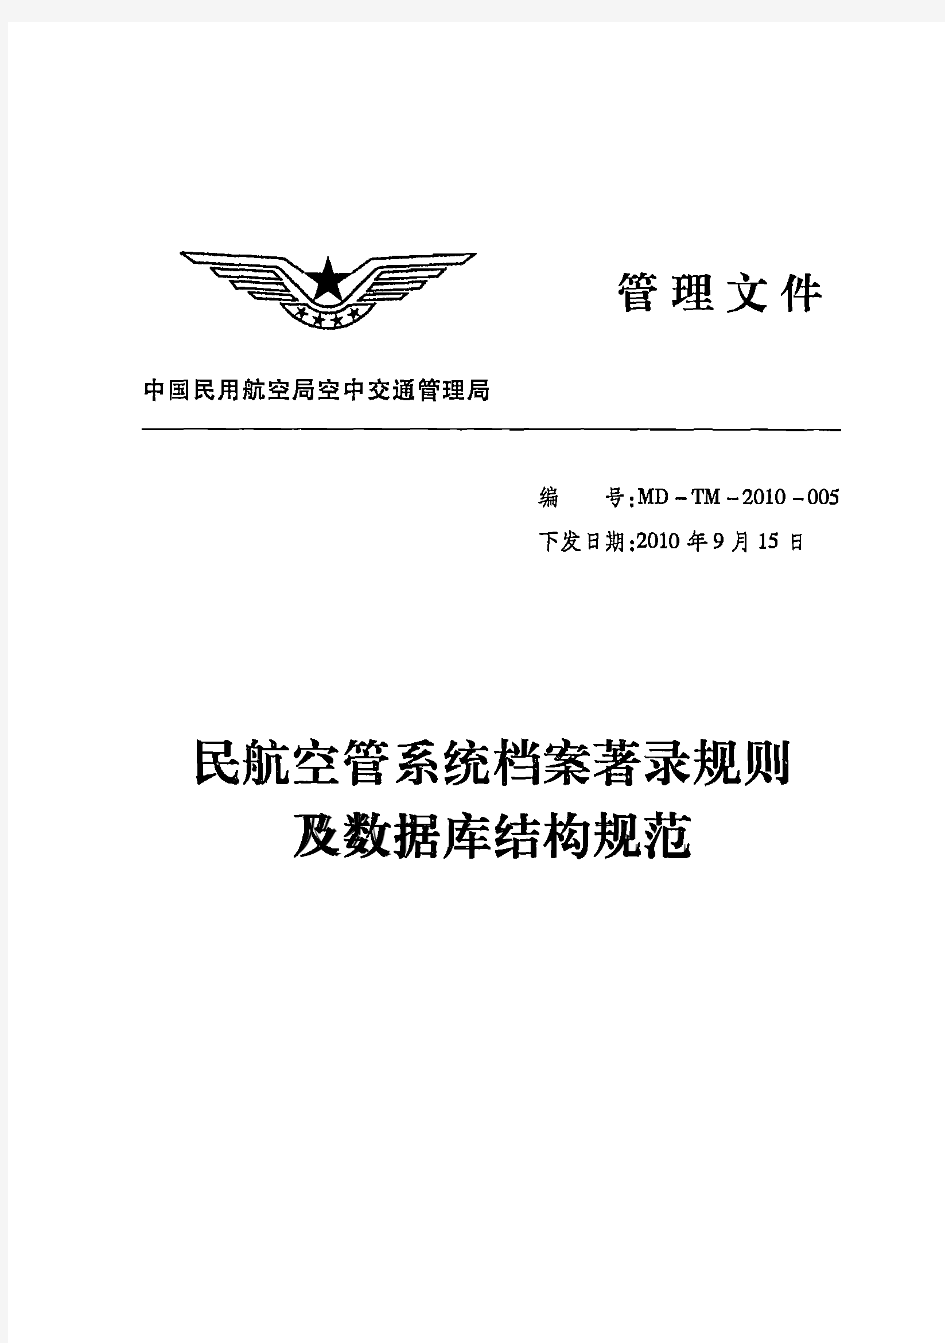 民航空管系统档案著录规则及数据库结构规范——MD-TM-2010-005